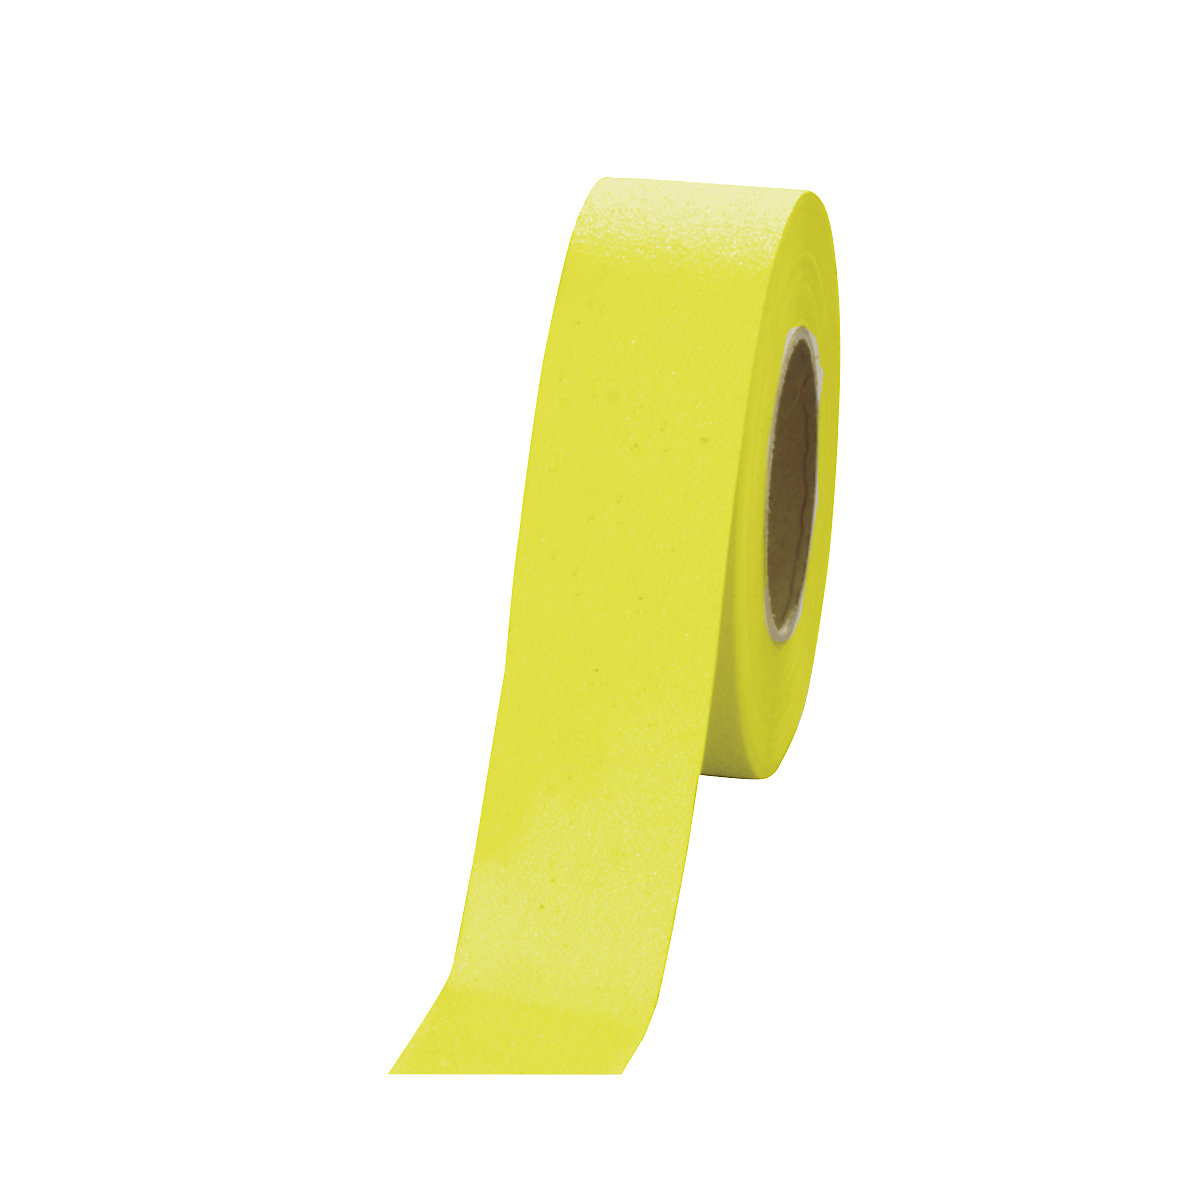 Bandă antiderapantă, autoadezivă, lățime 50 mm, galben, rolă, minimum 1 buc.